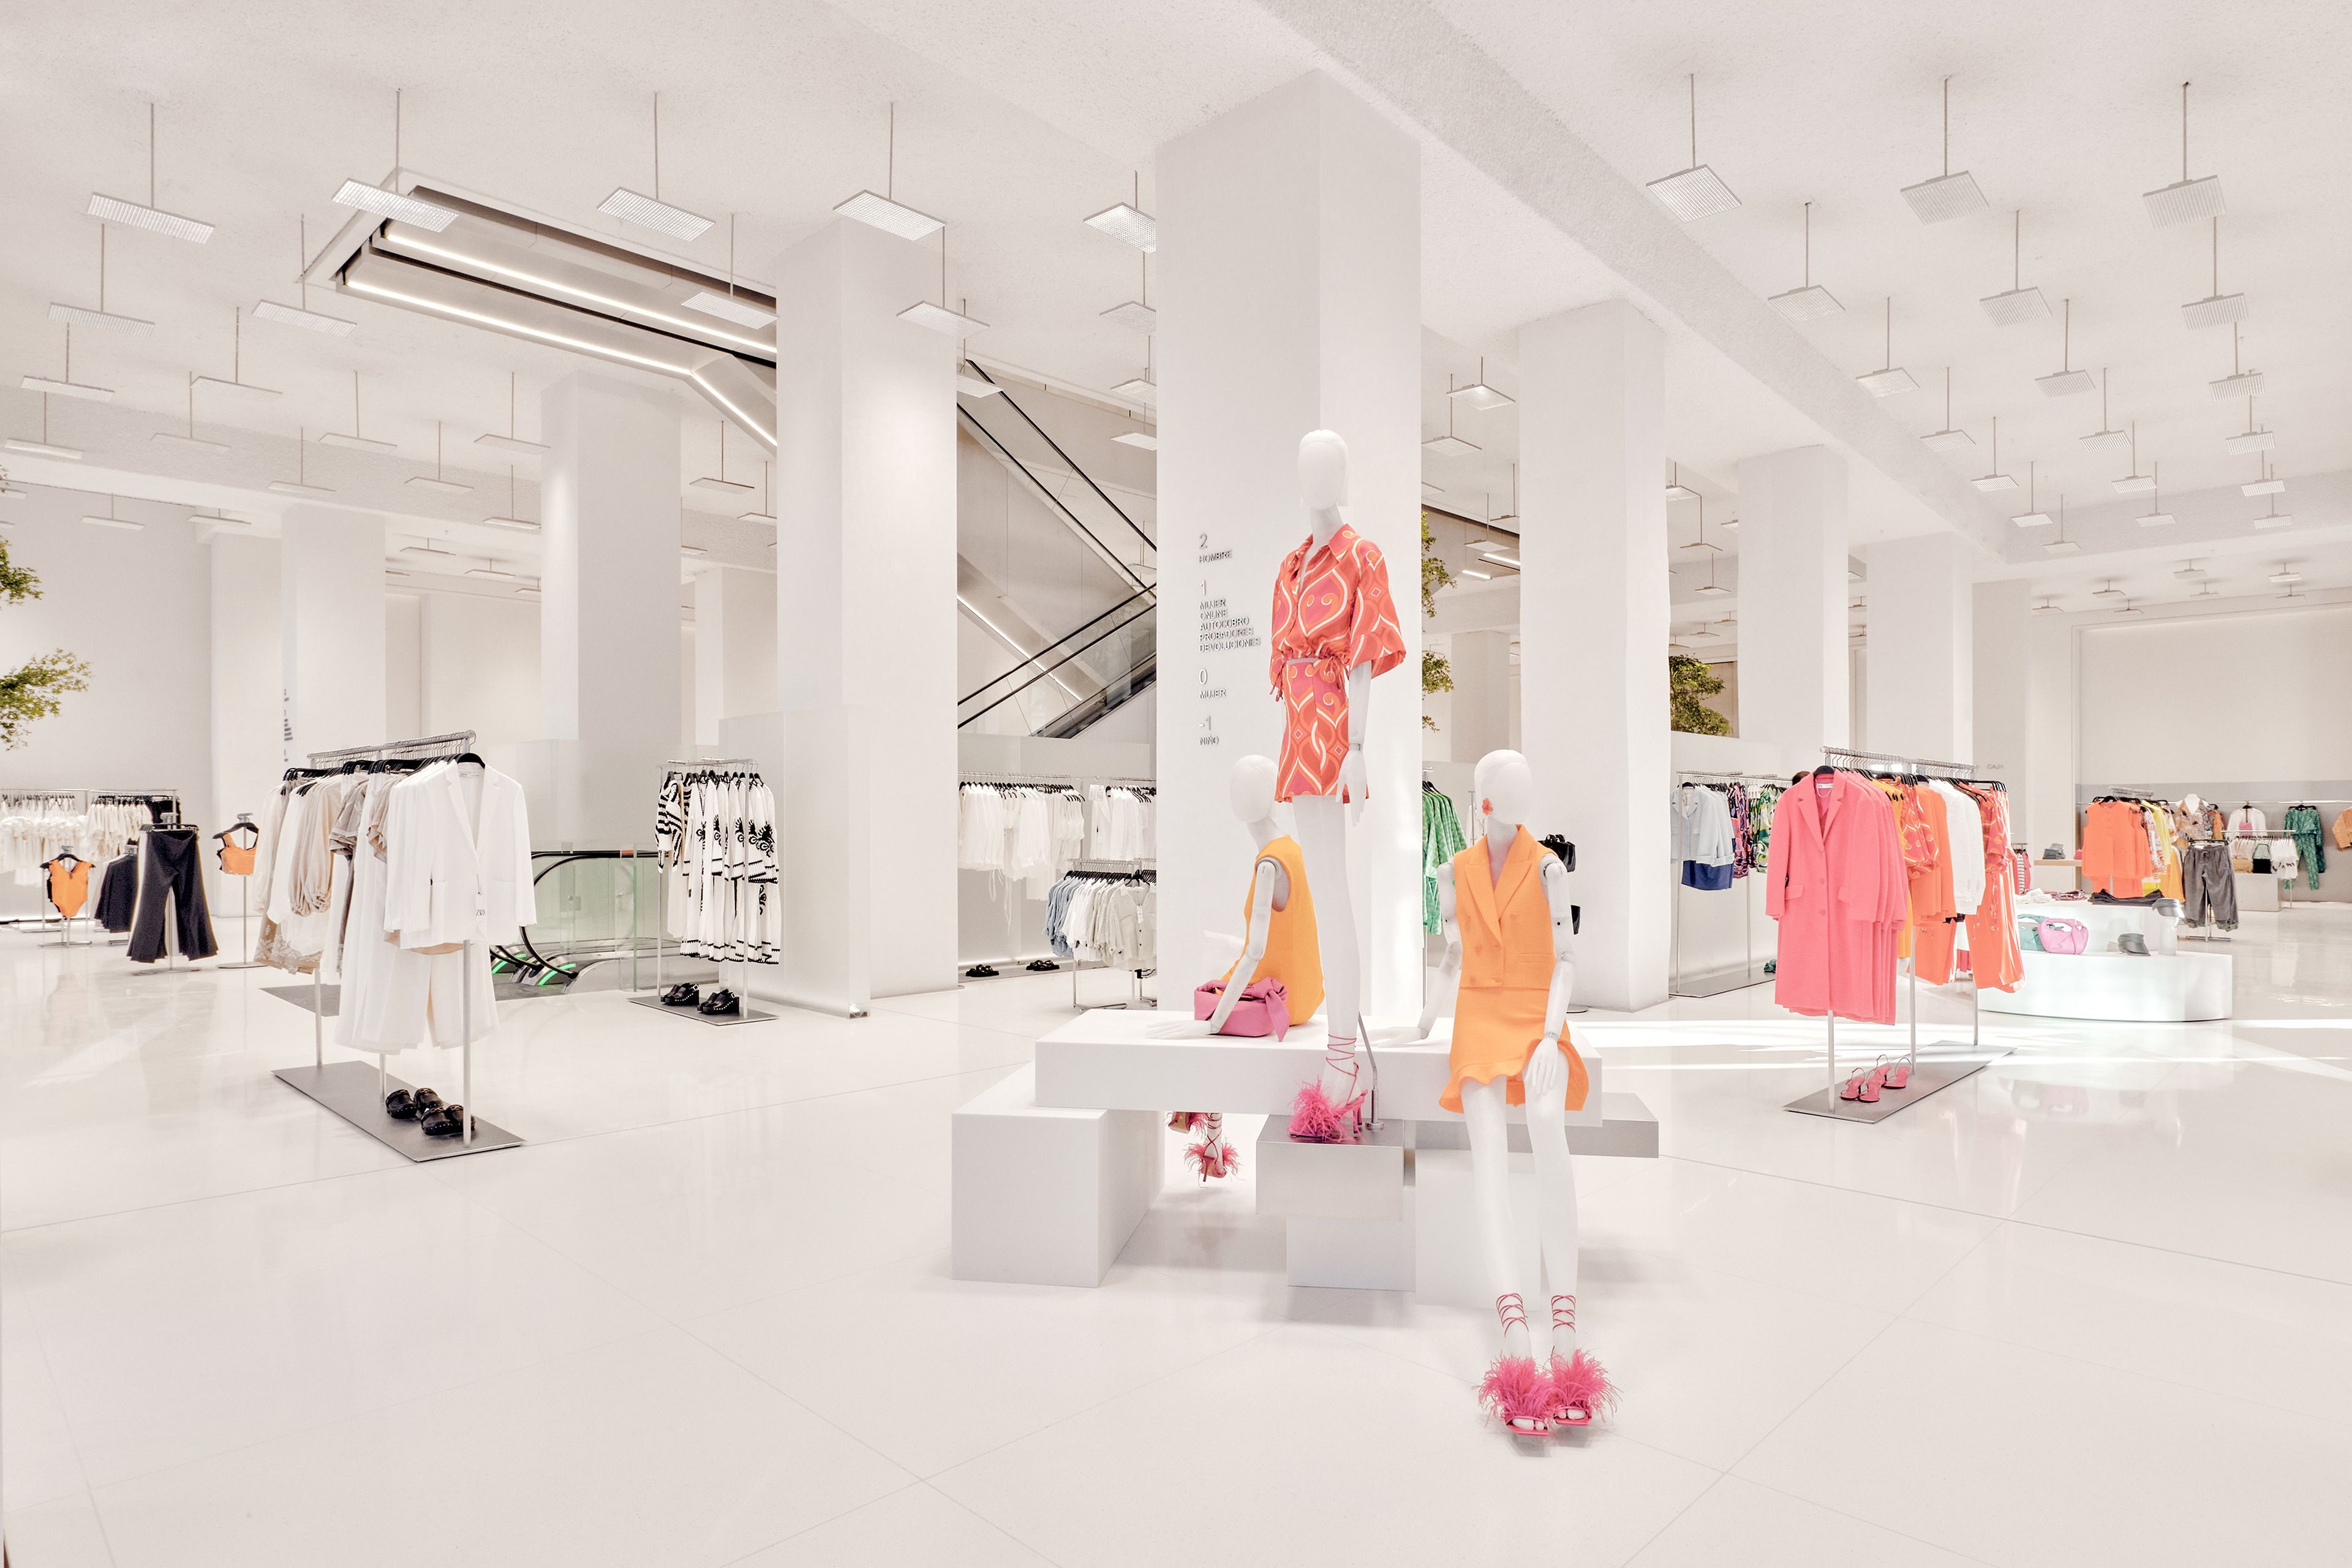 En imagen, espacio comercial de la colección de Mujer en la nueva tienda Zara.